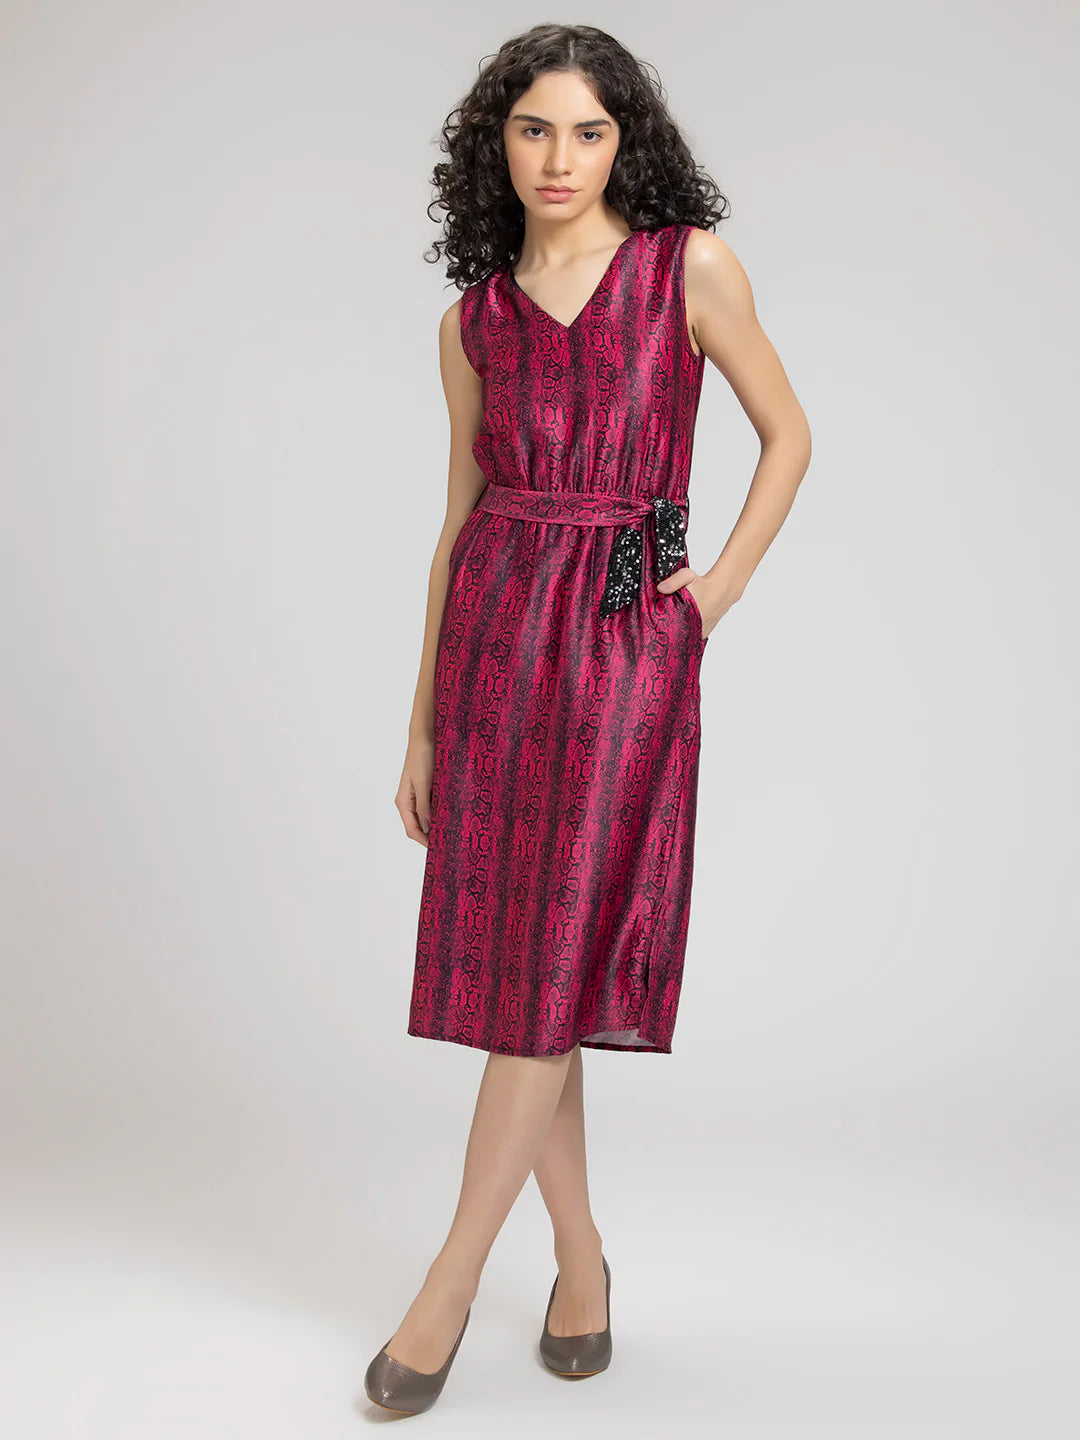 Snakeskin Midi Dress | Sizzling Snakeskin Print Midi Dress